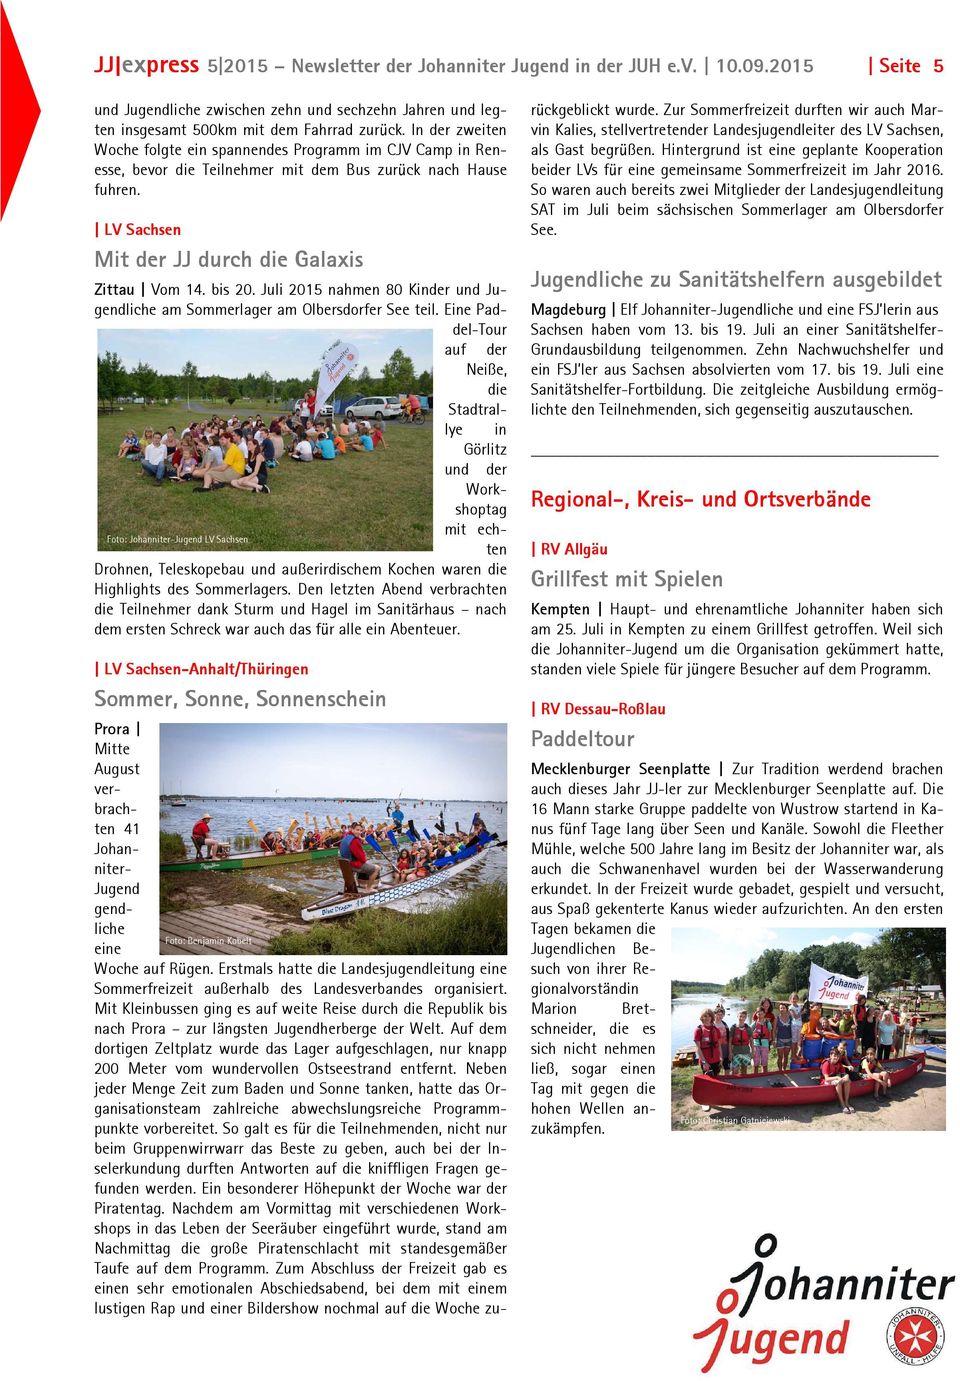 Juli 2015 nahmen 80 Kinder und Jugendliche am Sommerlager am Olbersdorfer See teil.